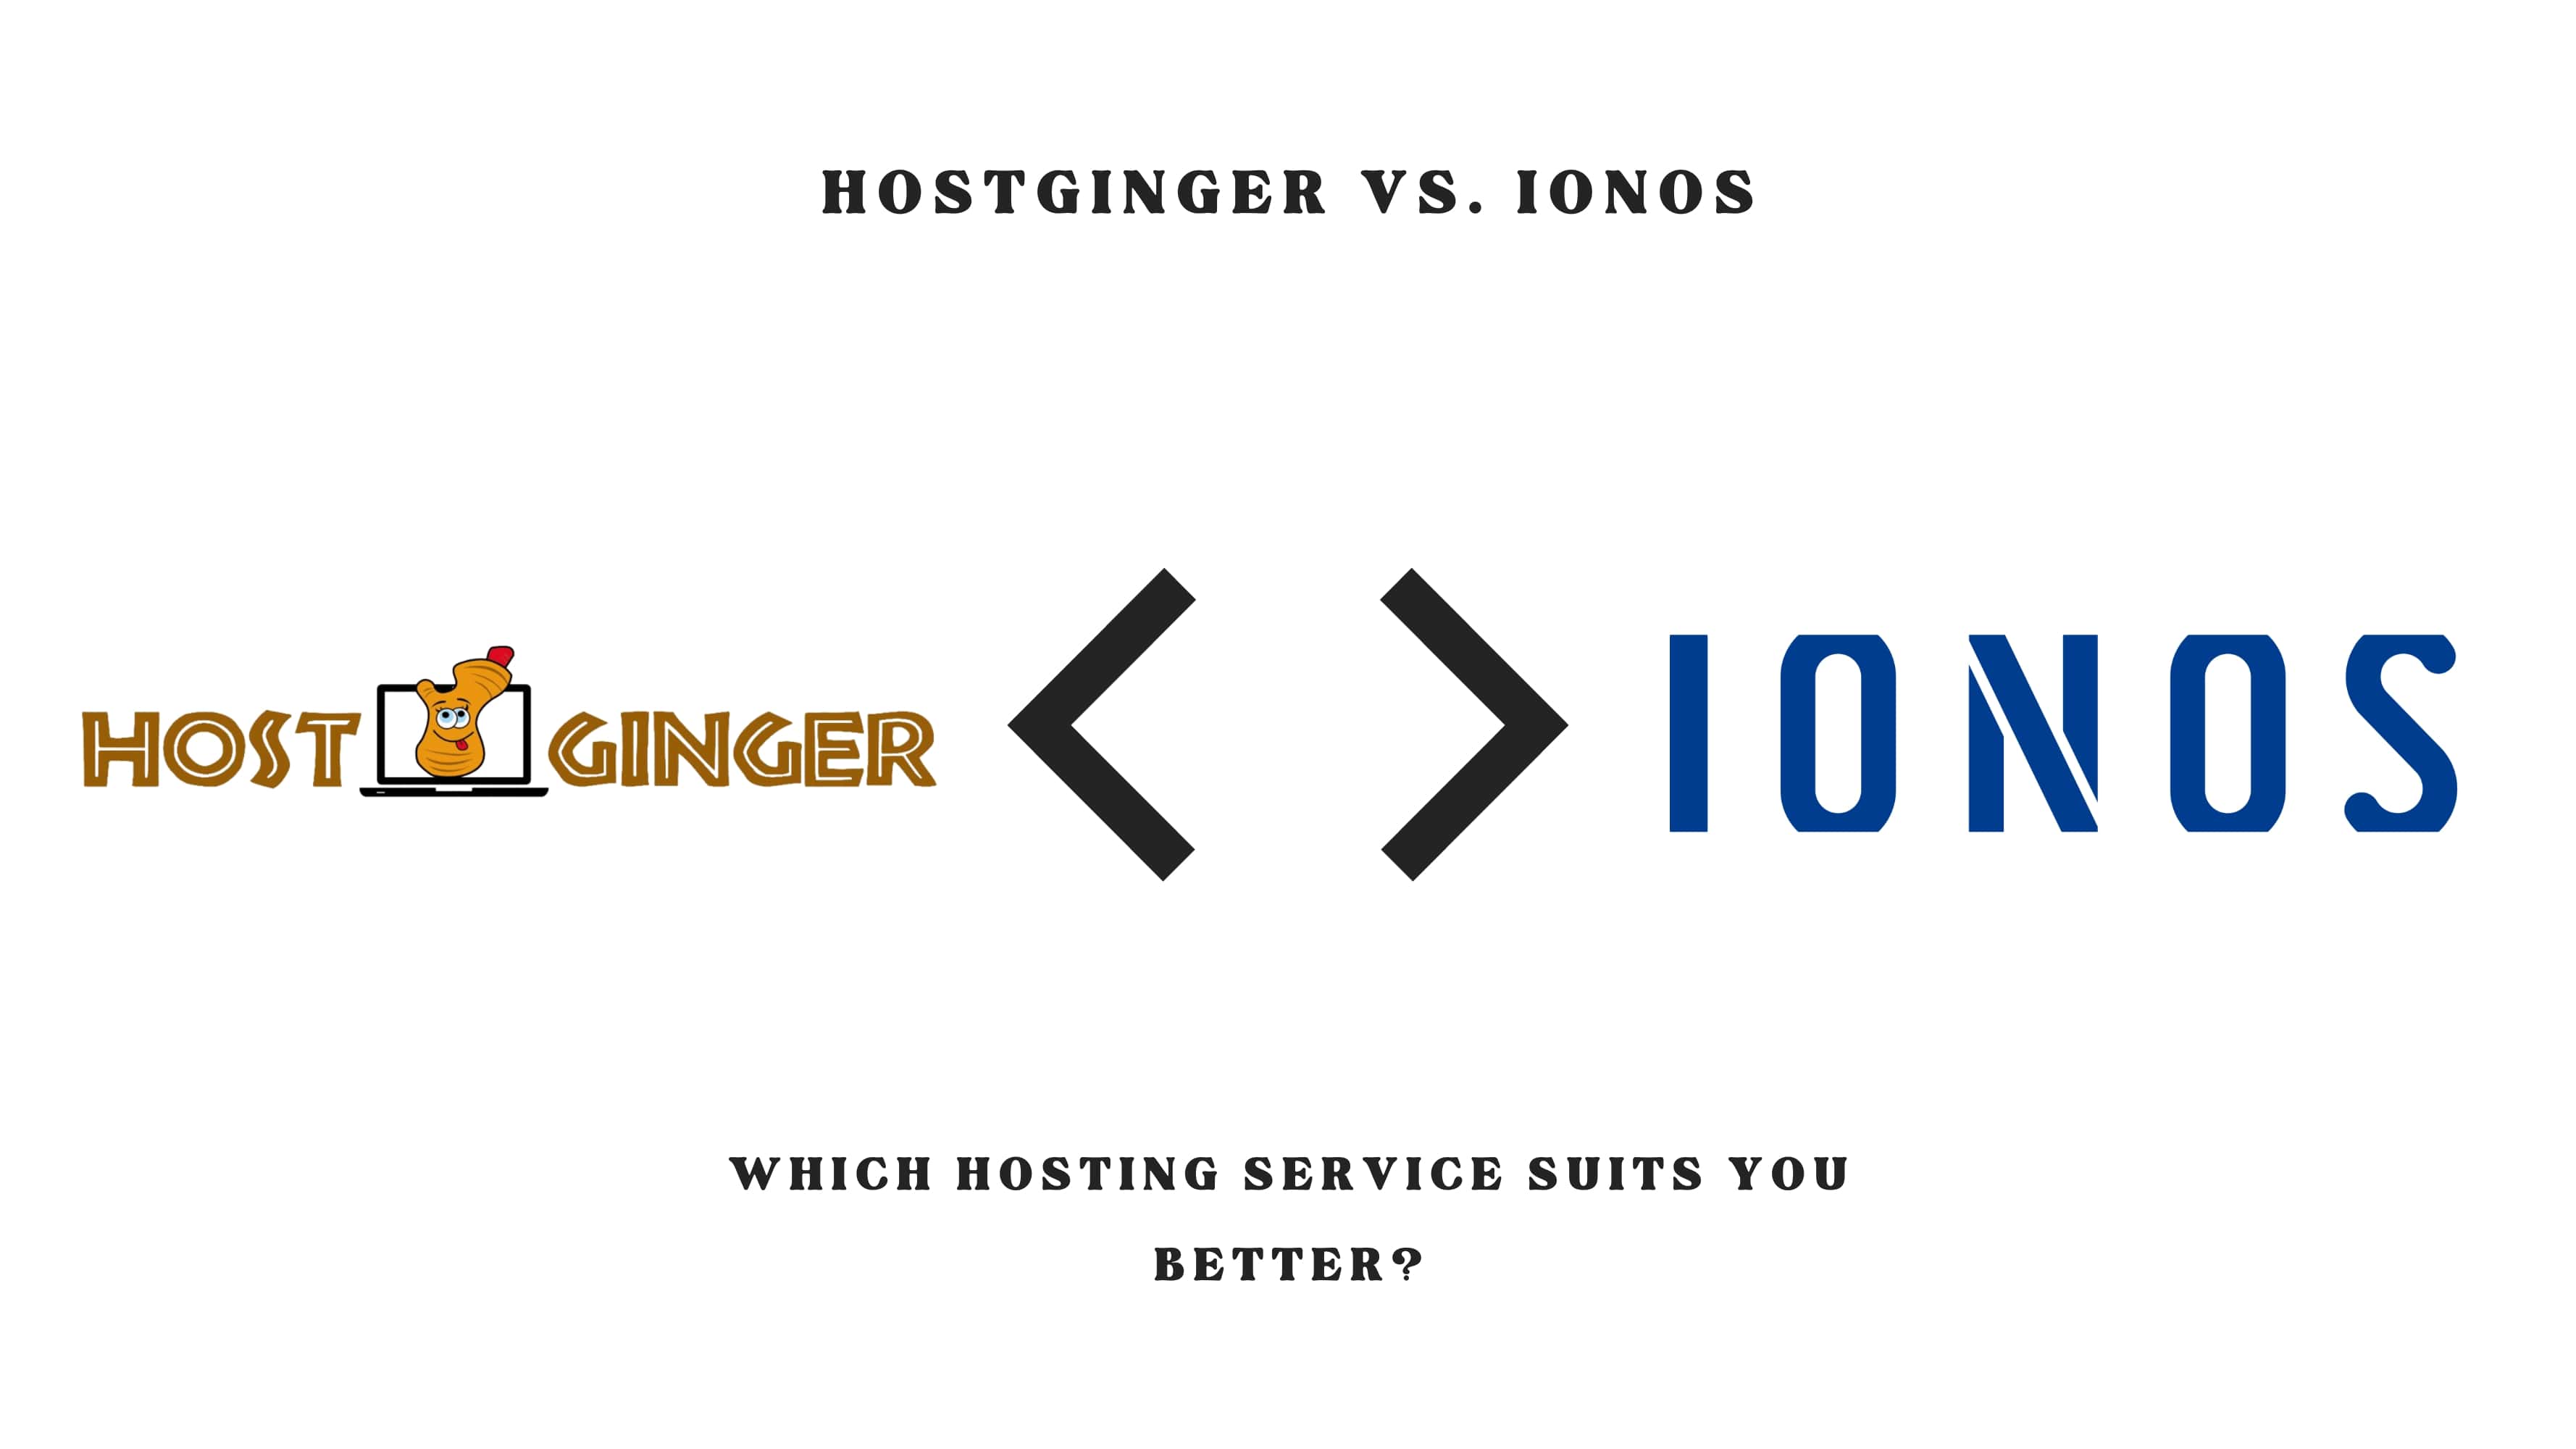 Hostginger vs. Ionos